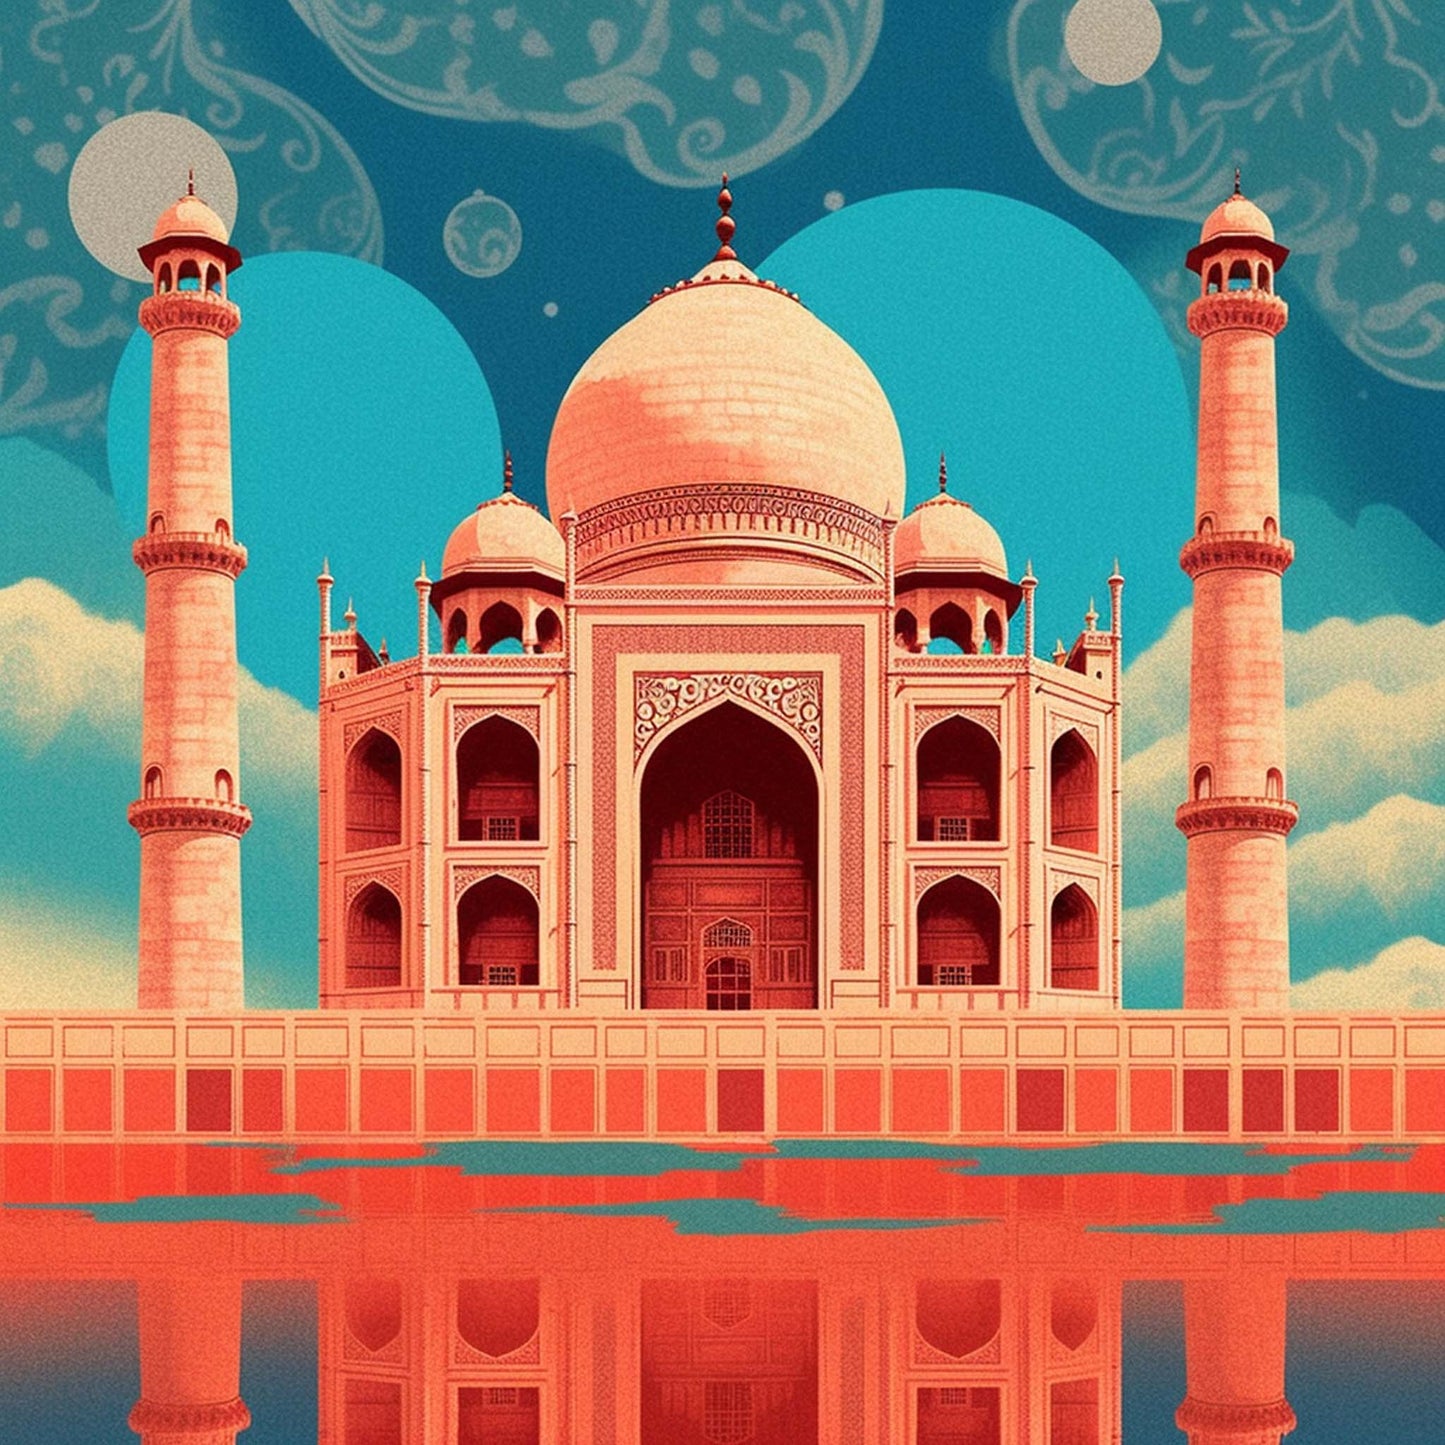 Urbanisto - Taj Mahal - Wandbild in der Stilrichtung des Minimalismus